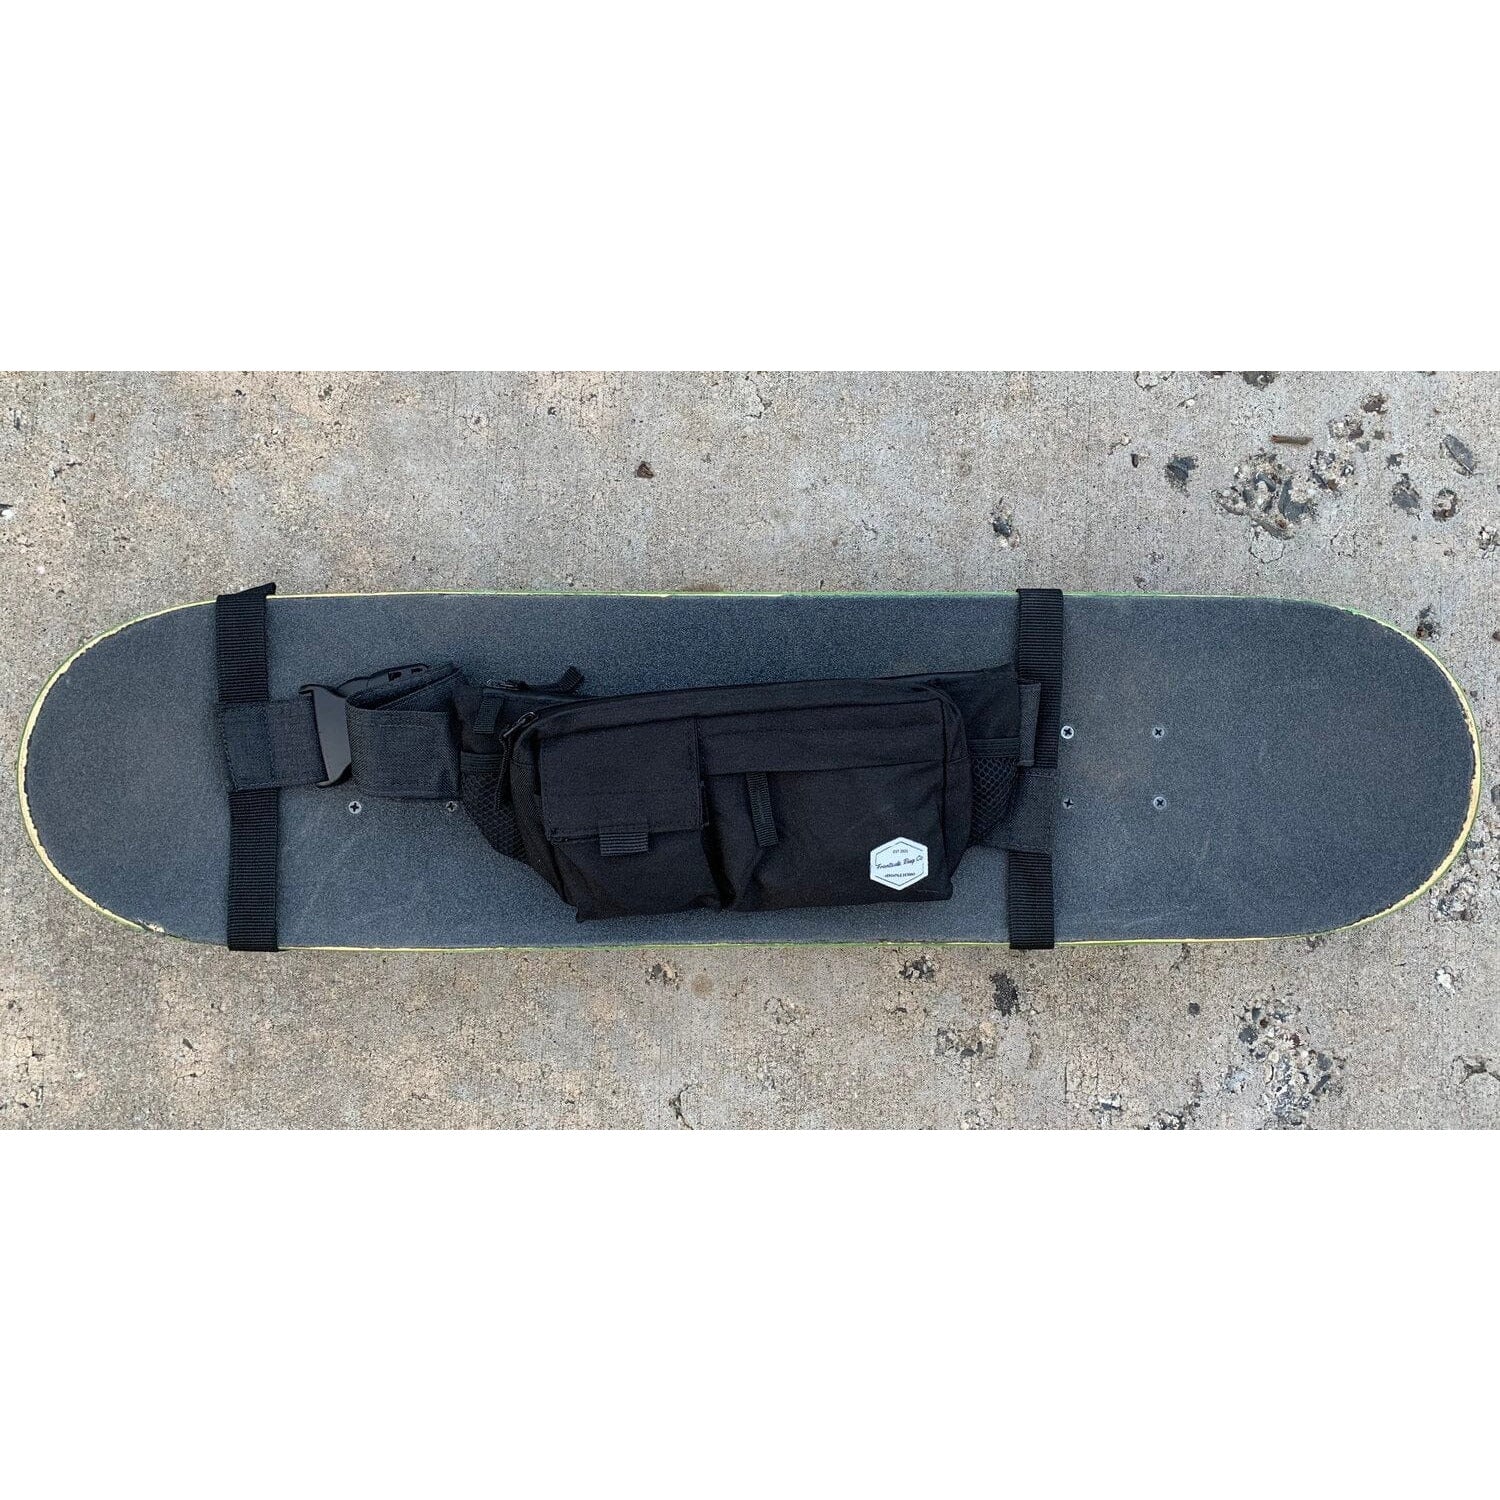 Skateboard Accessories Frontside Bag Co. Sling Bag & Carry Strap Frontside The Groove Skate Shop